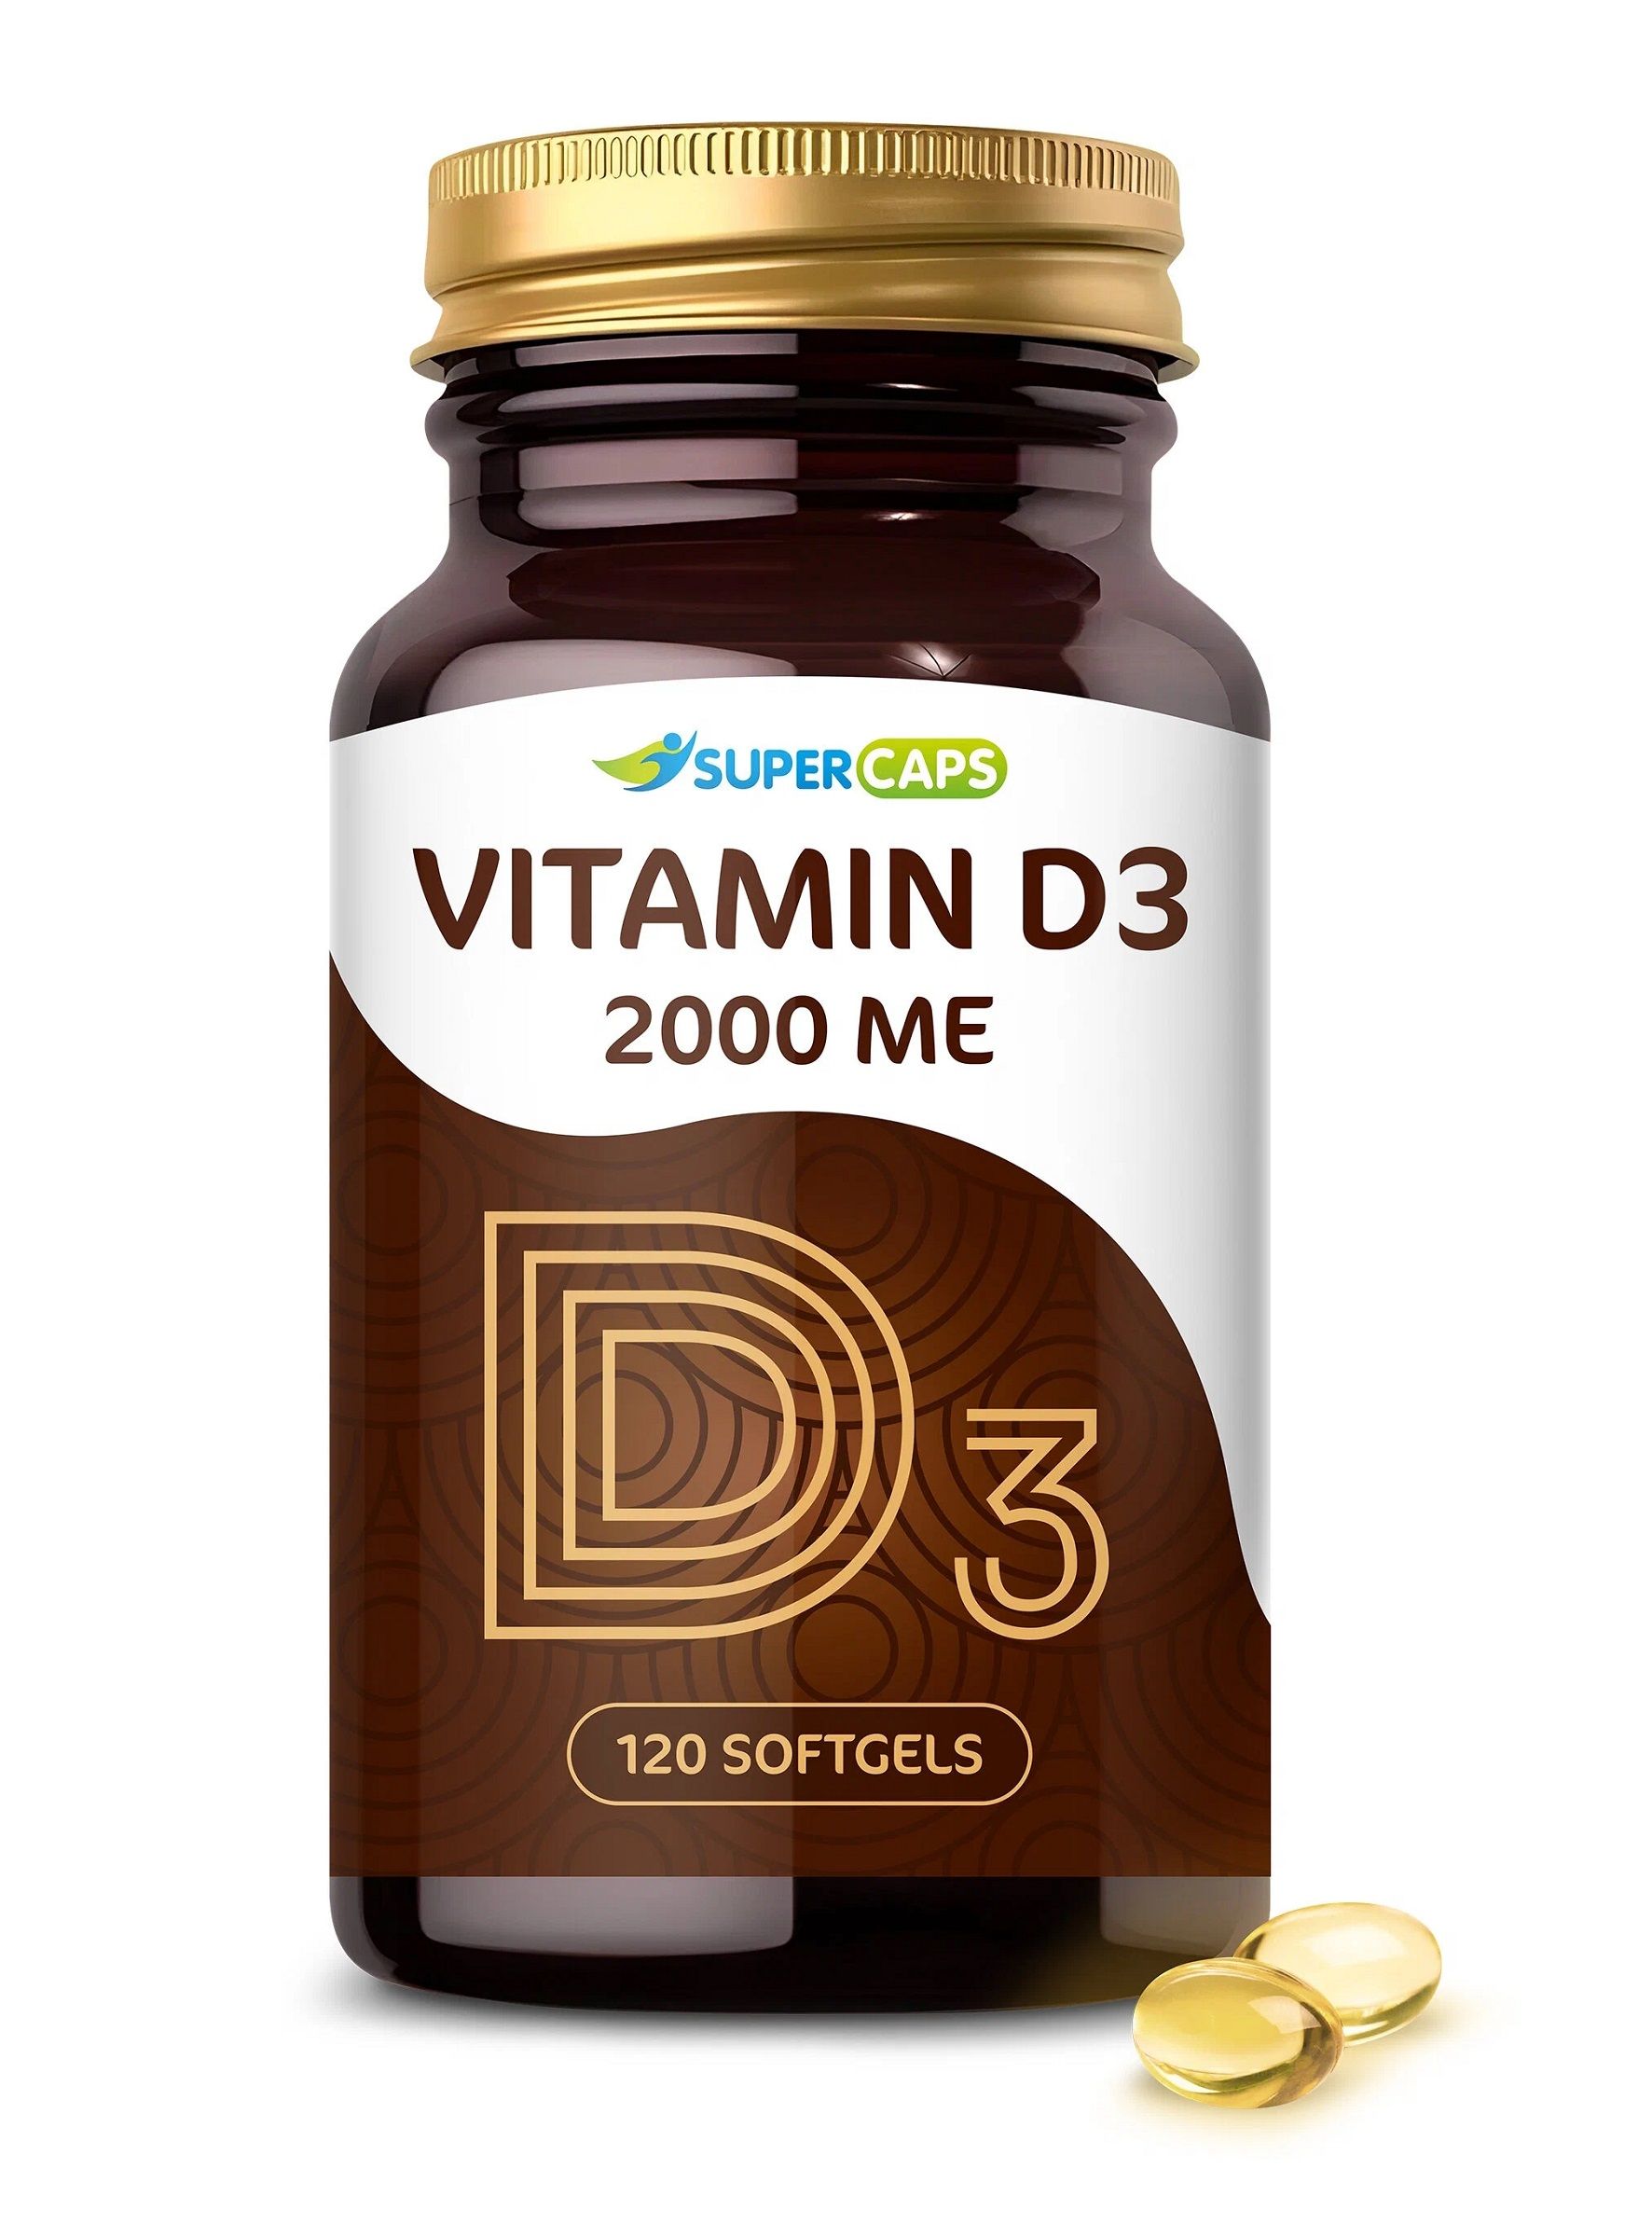 Комплексная пищевая добавка «VITAMIN D3 2000 ME» выполняет ряд важнейших функций: <br>  -    Обеспечивает усвоение кальция и фосфора. Витамин D3 необходим для поддержания здоровья опорно-двигательного аппарата у взрослых. От уровня витамина D3 в крови также зависит состояние кожи, волос, ногтей и зубов.<br> -    Регулирует обменные процессы в клетках. Витамин D3 поддерживает свертываемость крови, способствует лучшему усвоению углеводов, препятствует образованию холестериновых бляшек.<br> -    Укрепляет иммунитет. Холекальциферол стимулирует работу иммунной системы, помогая организму бороться с вирусами и бактериями. Достаточный уровень витамина снижает риск развития аутоиммунных процессов и злокачественного перерождения клеток.<br><br>  Незаменим витамин D3 и для женского здоровья: способствует здоровью репродуктивной системы, так же положительно влияет на гормональный фон, а в период беременности поддерживает организм матери и плод. Противопоказания: индивидуальная непереносимость компонентов. Перед приемом рекомендуется проконсультироваться с врачом.